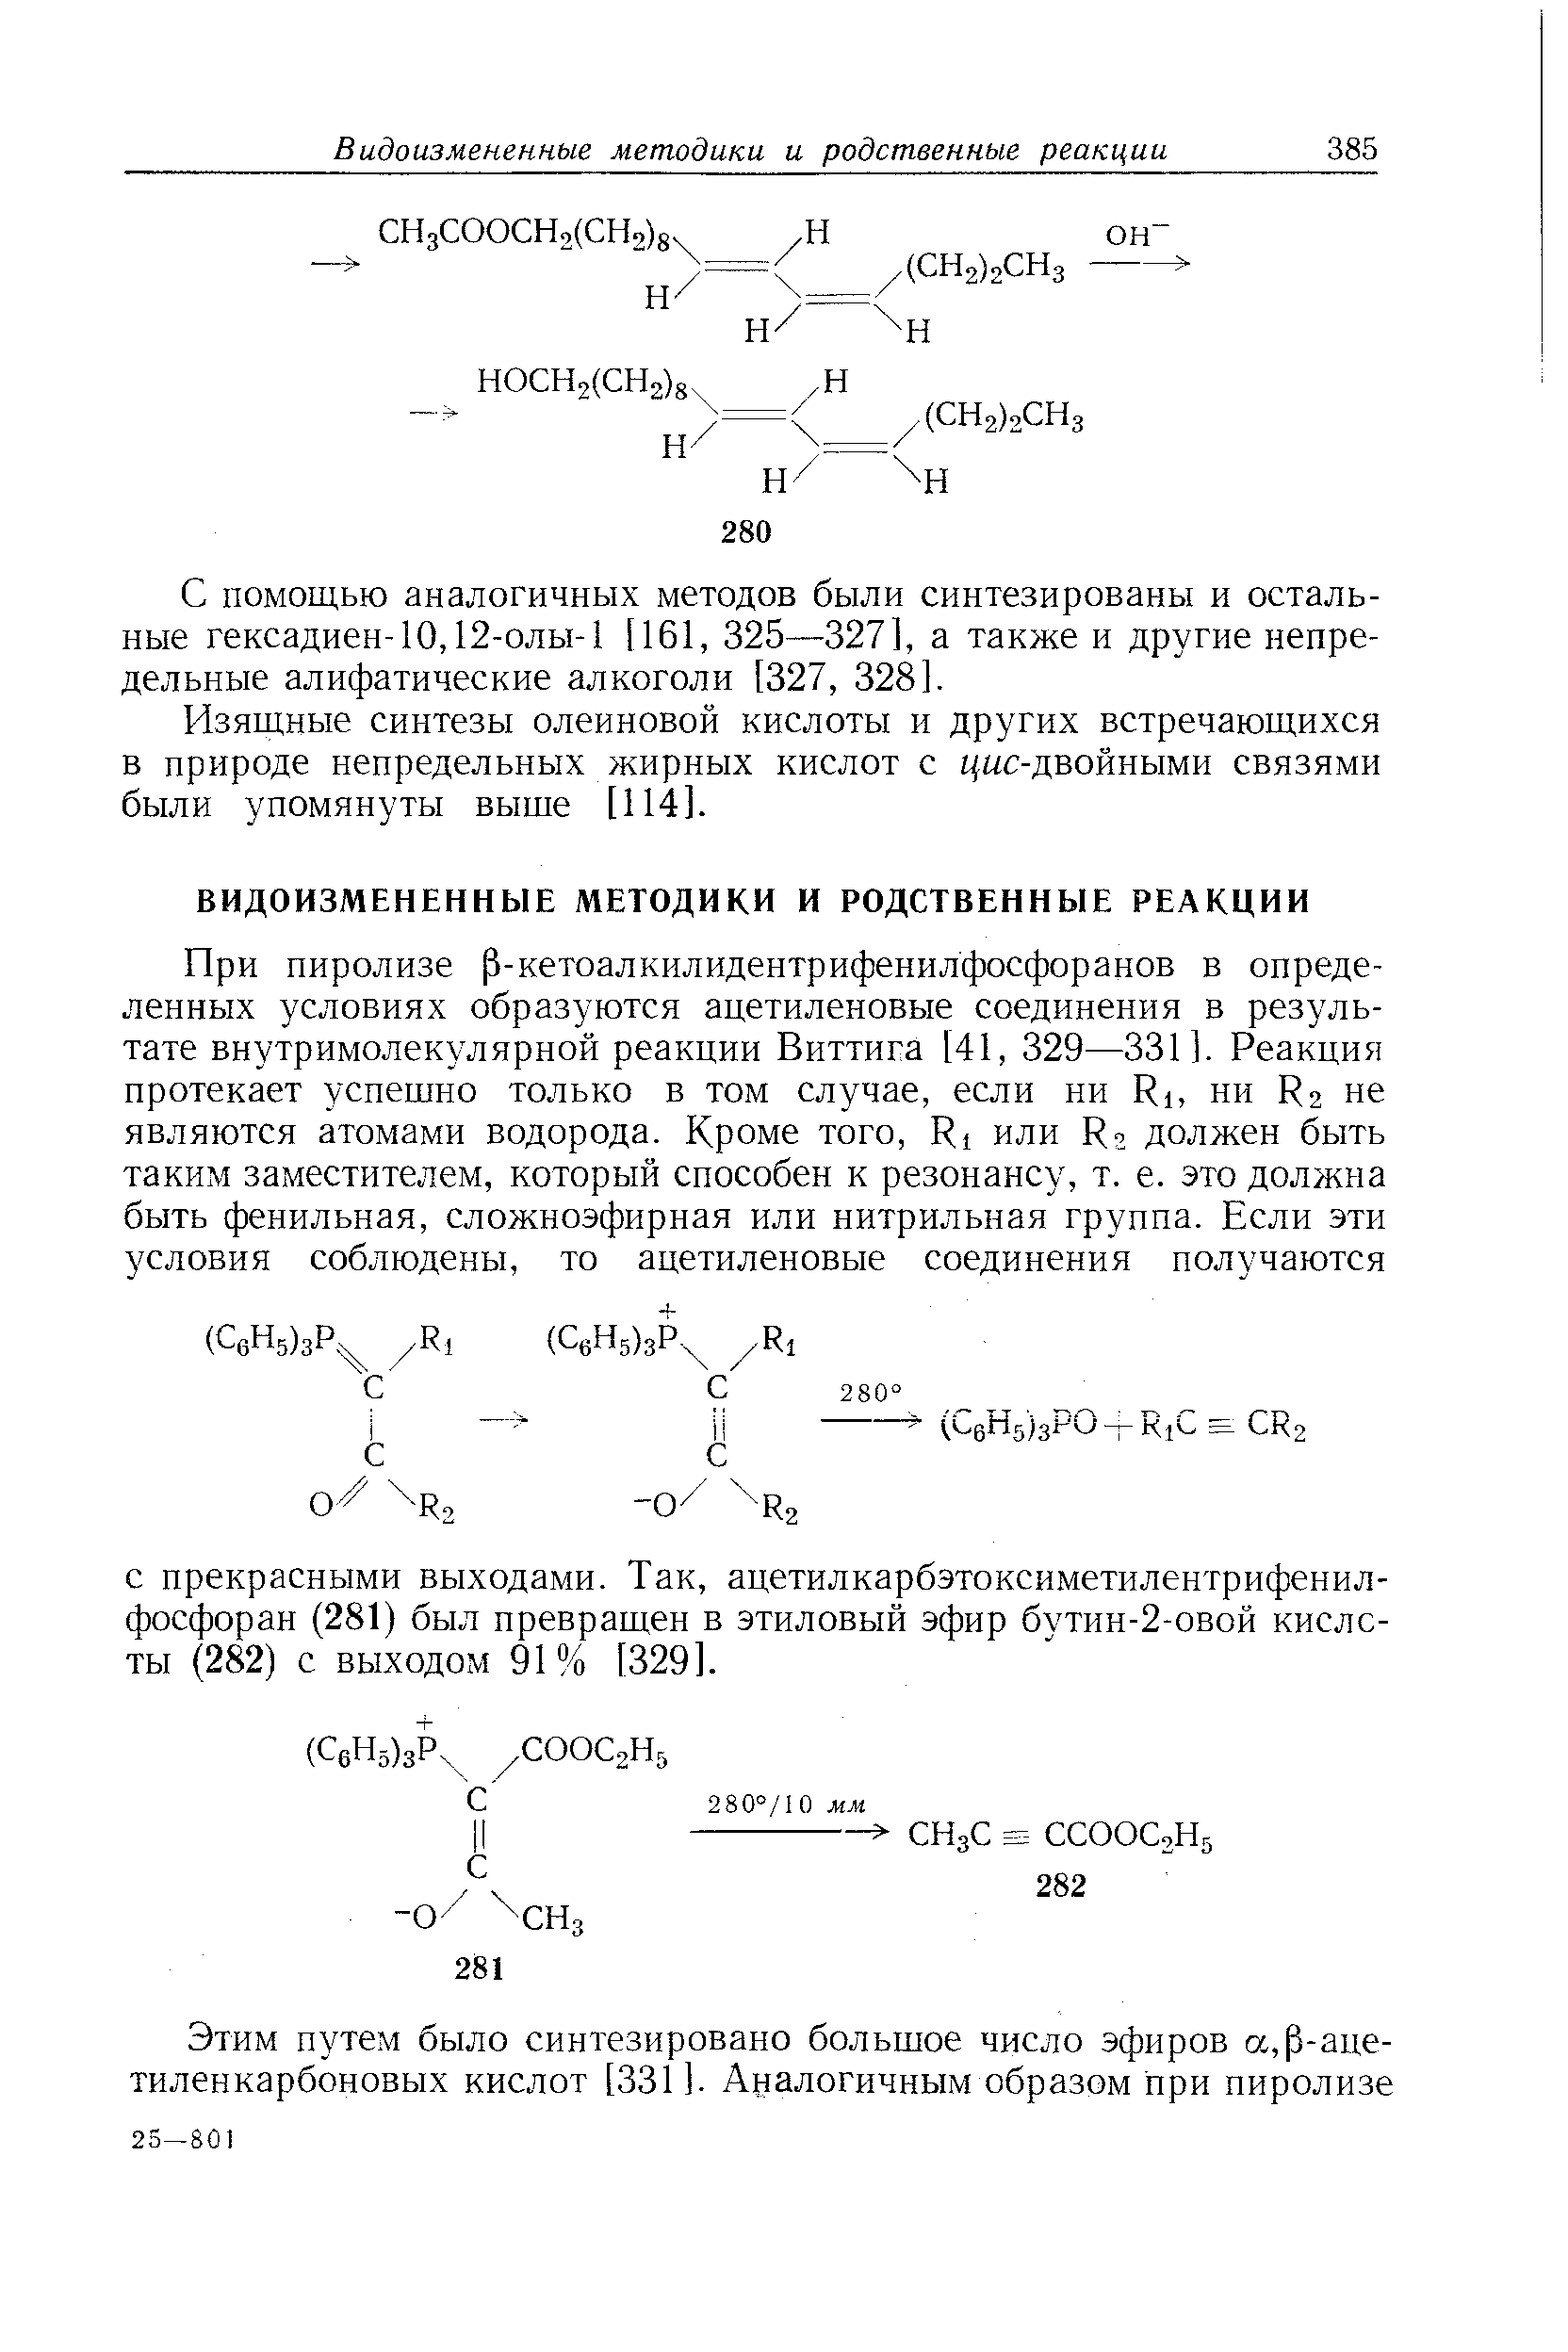 С помощью аналогичных методов были синтезированы и остальные гексадиен-10,12-0ЛЫ-1 [161, 325—327], а также и другие непредельные алифатические алкоголи [327, 328].